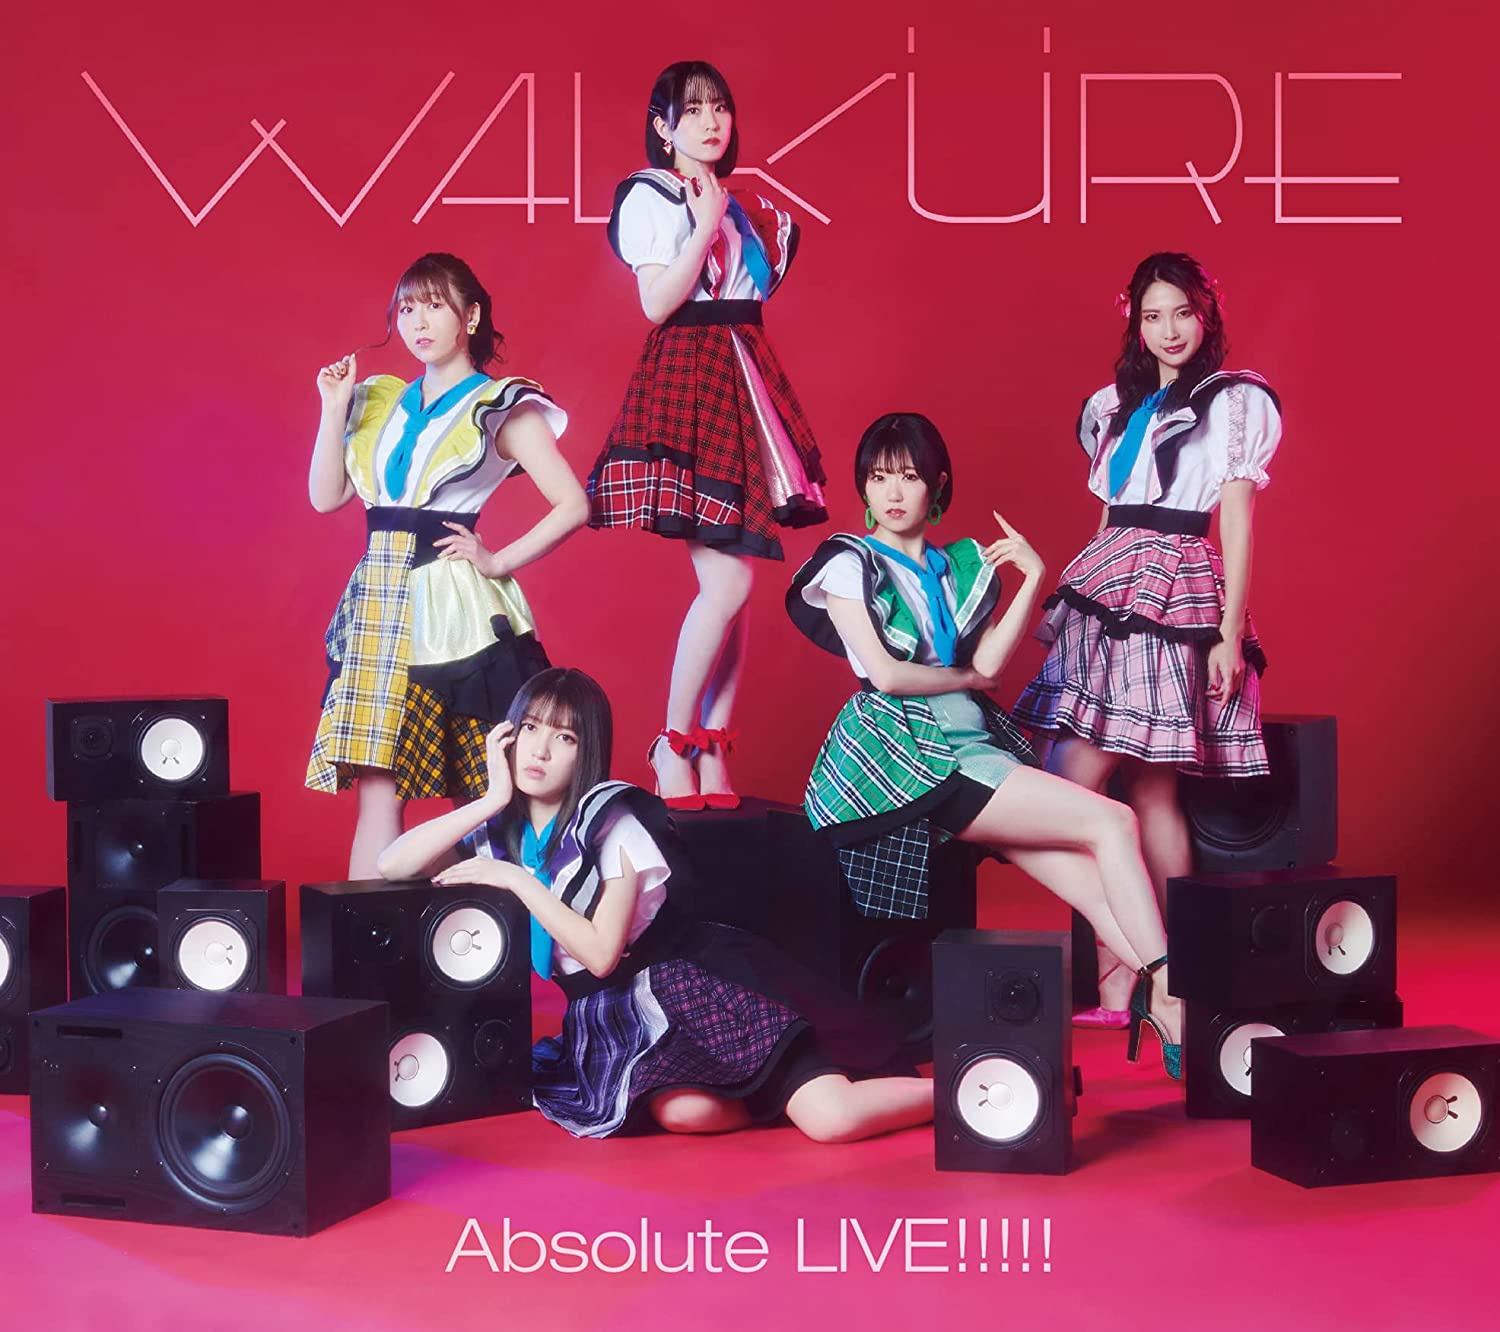 「マクロスΔ」ライブベストアルバム「Absolute LIVE!!!!!」 [初回限定盤] [4CD + Blu-ray]